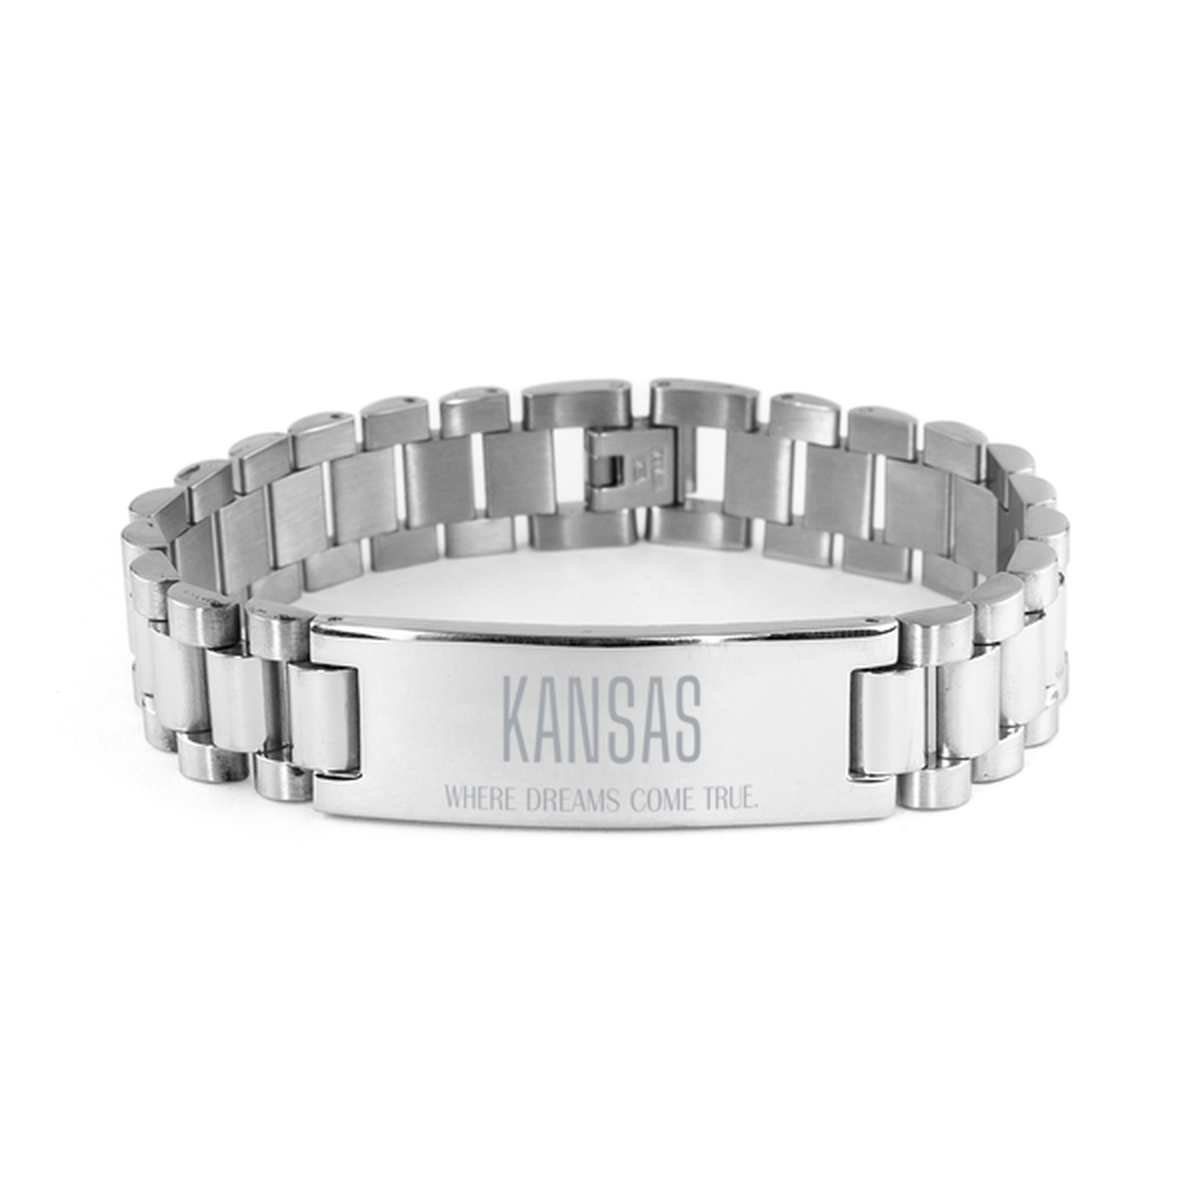 Love Kansas State Ladder Stainless Steel Bracelet, Kansas Where dreams come true, Birthday Inspirational Gifts For Kansas Men, Women, Friends